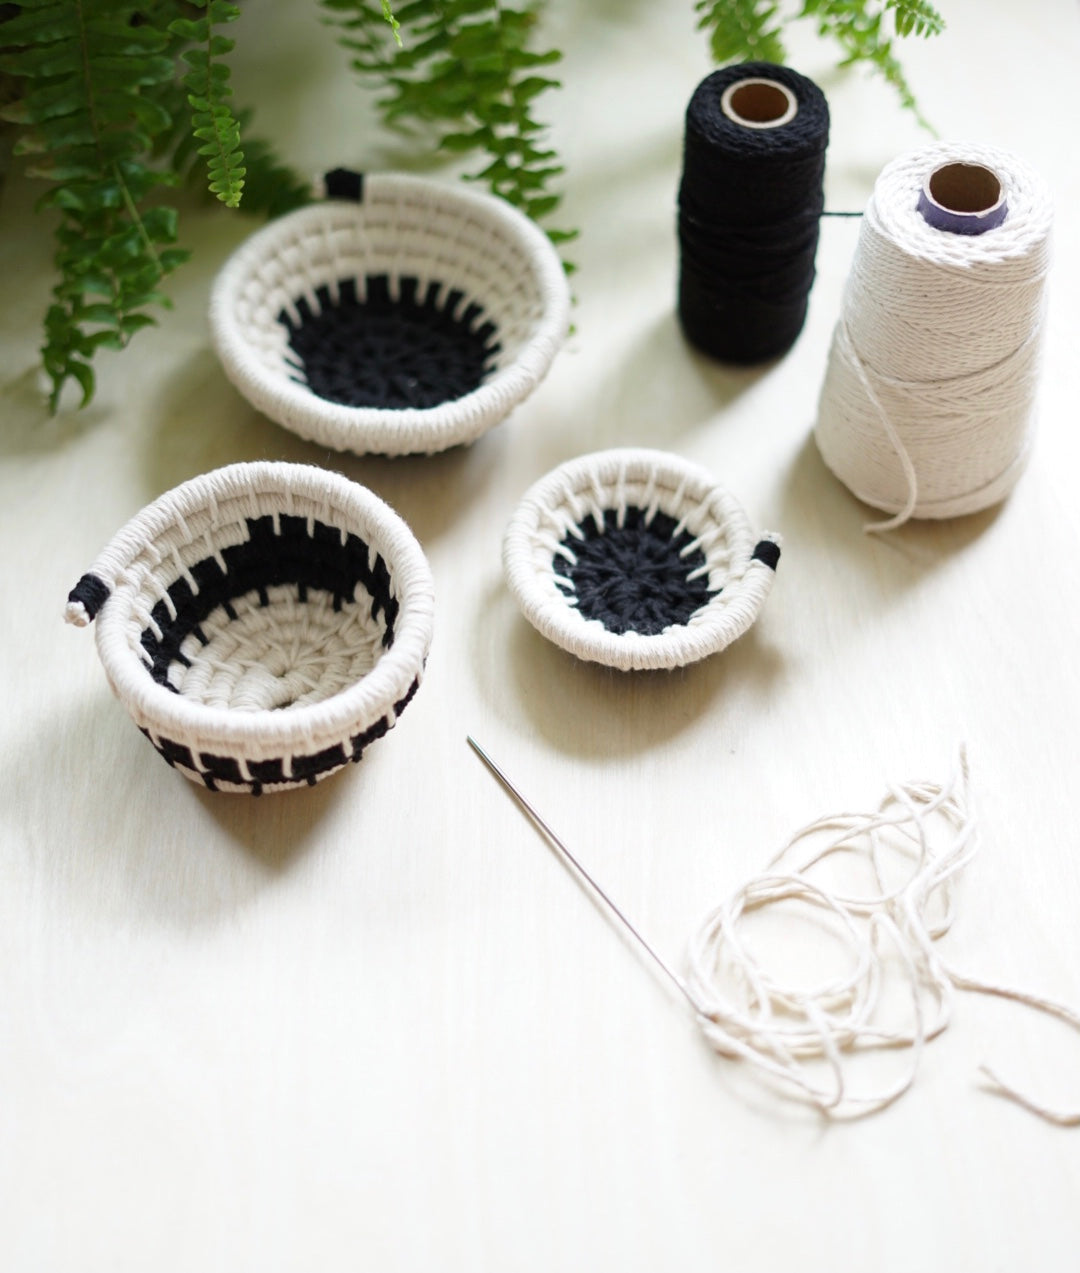 DIY Coil Basket Making kit